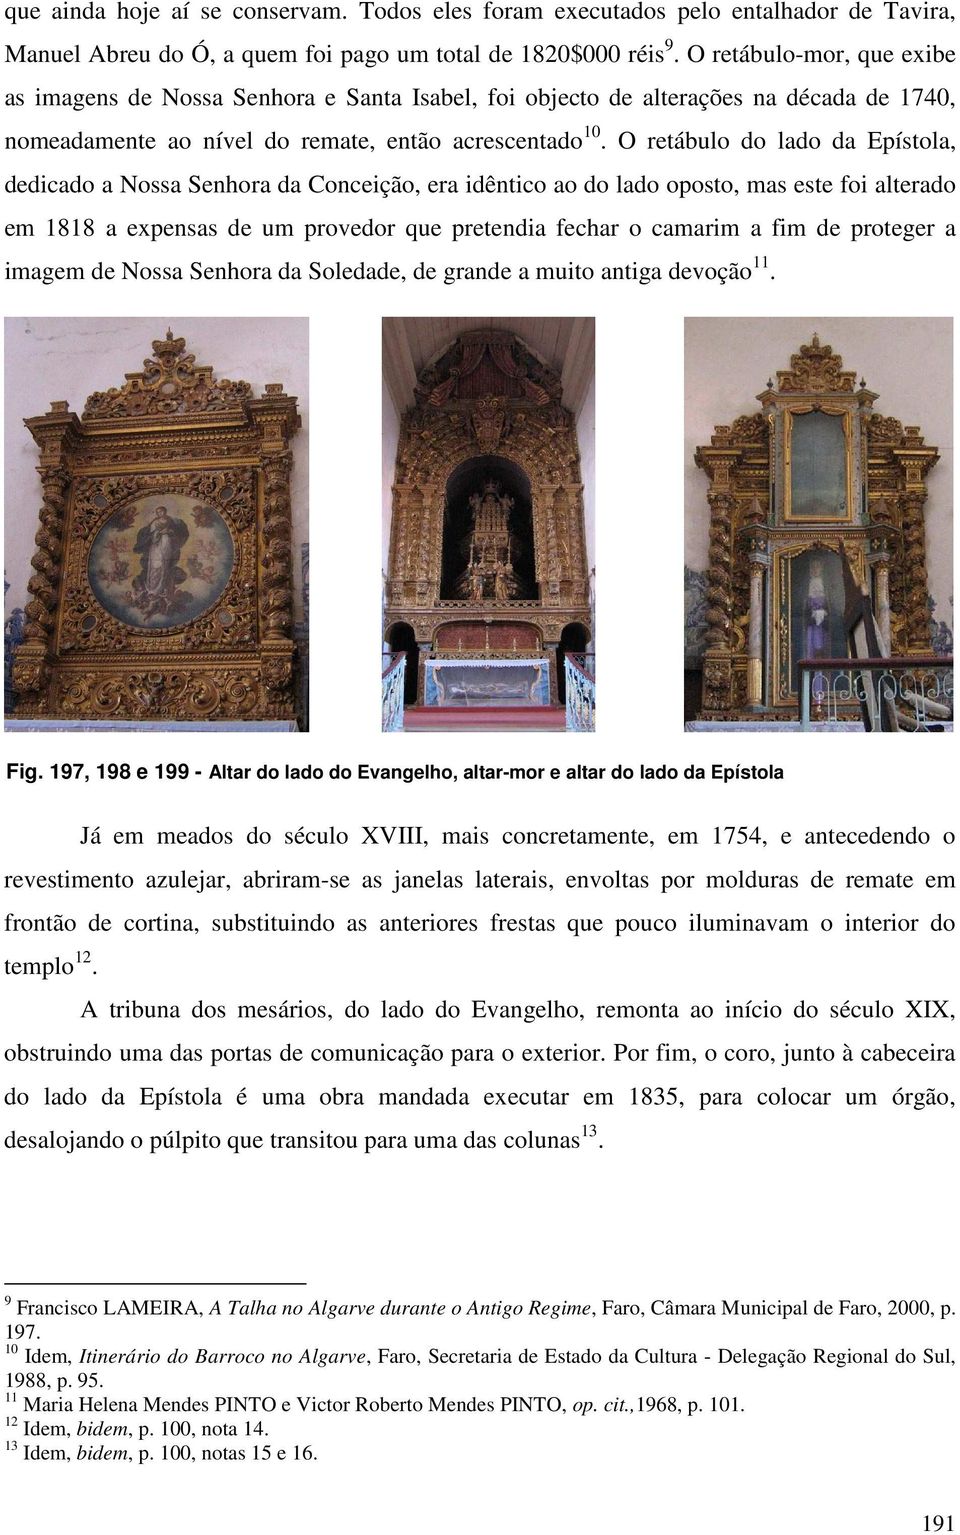 O retábulo do lado da Epístola, dedicado a Nossa Senhora da Conceição, era idêntico ao do lado oposto, mas este foi alterado em 1818 a expensas de um provedor que pretendia fechar o camarim a fim de